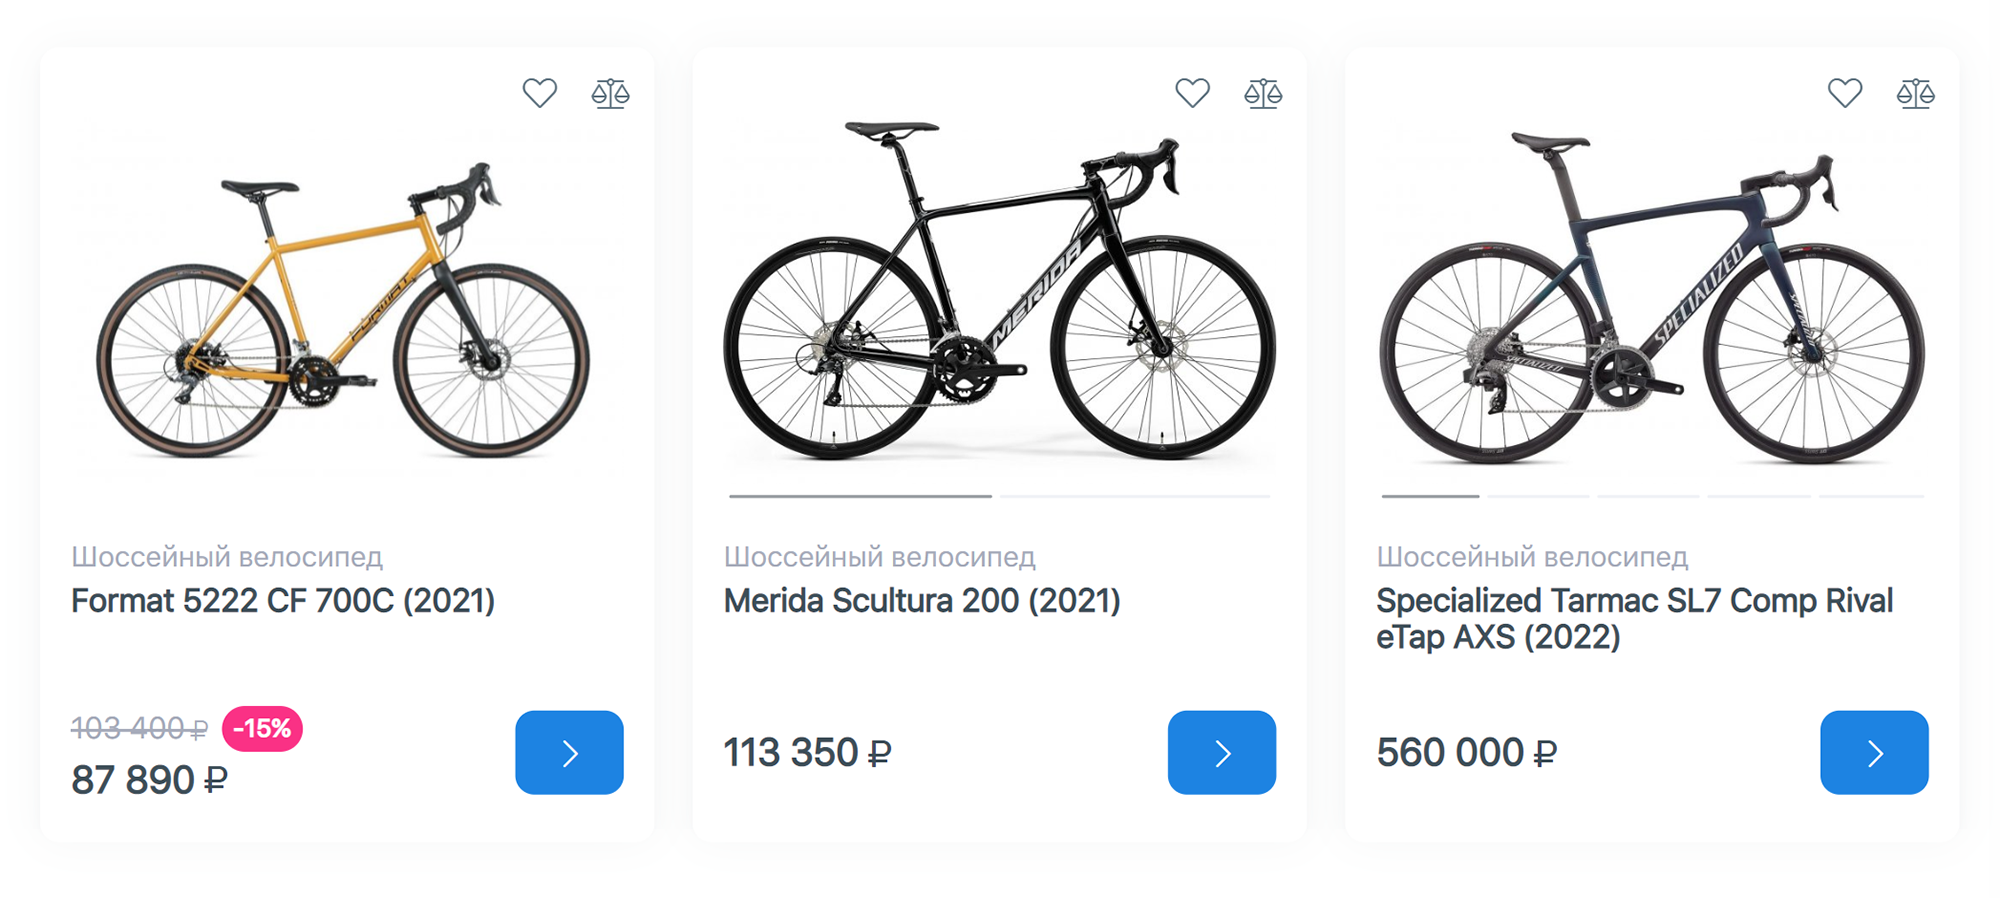 Разброс цен на шоссейные велосипеды очень большой. Источник: pro⁠-⁠bike.ru